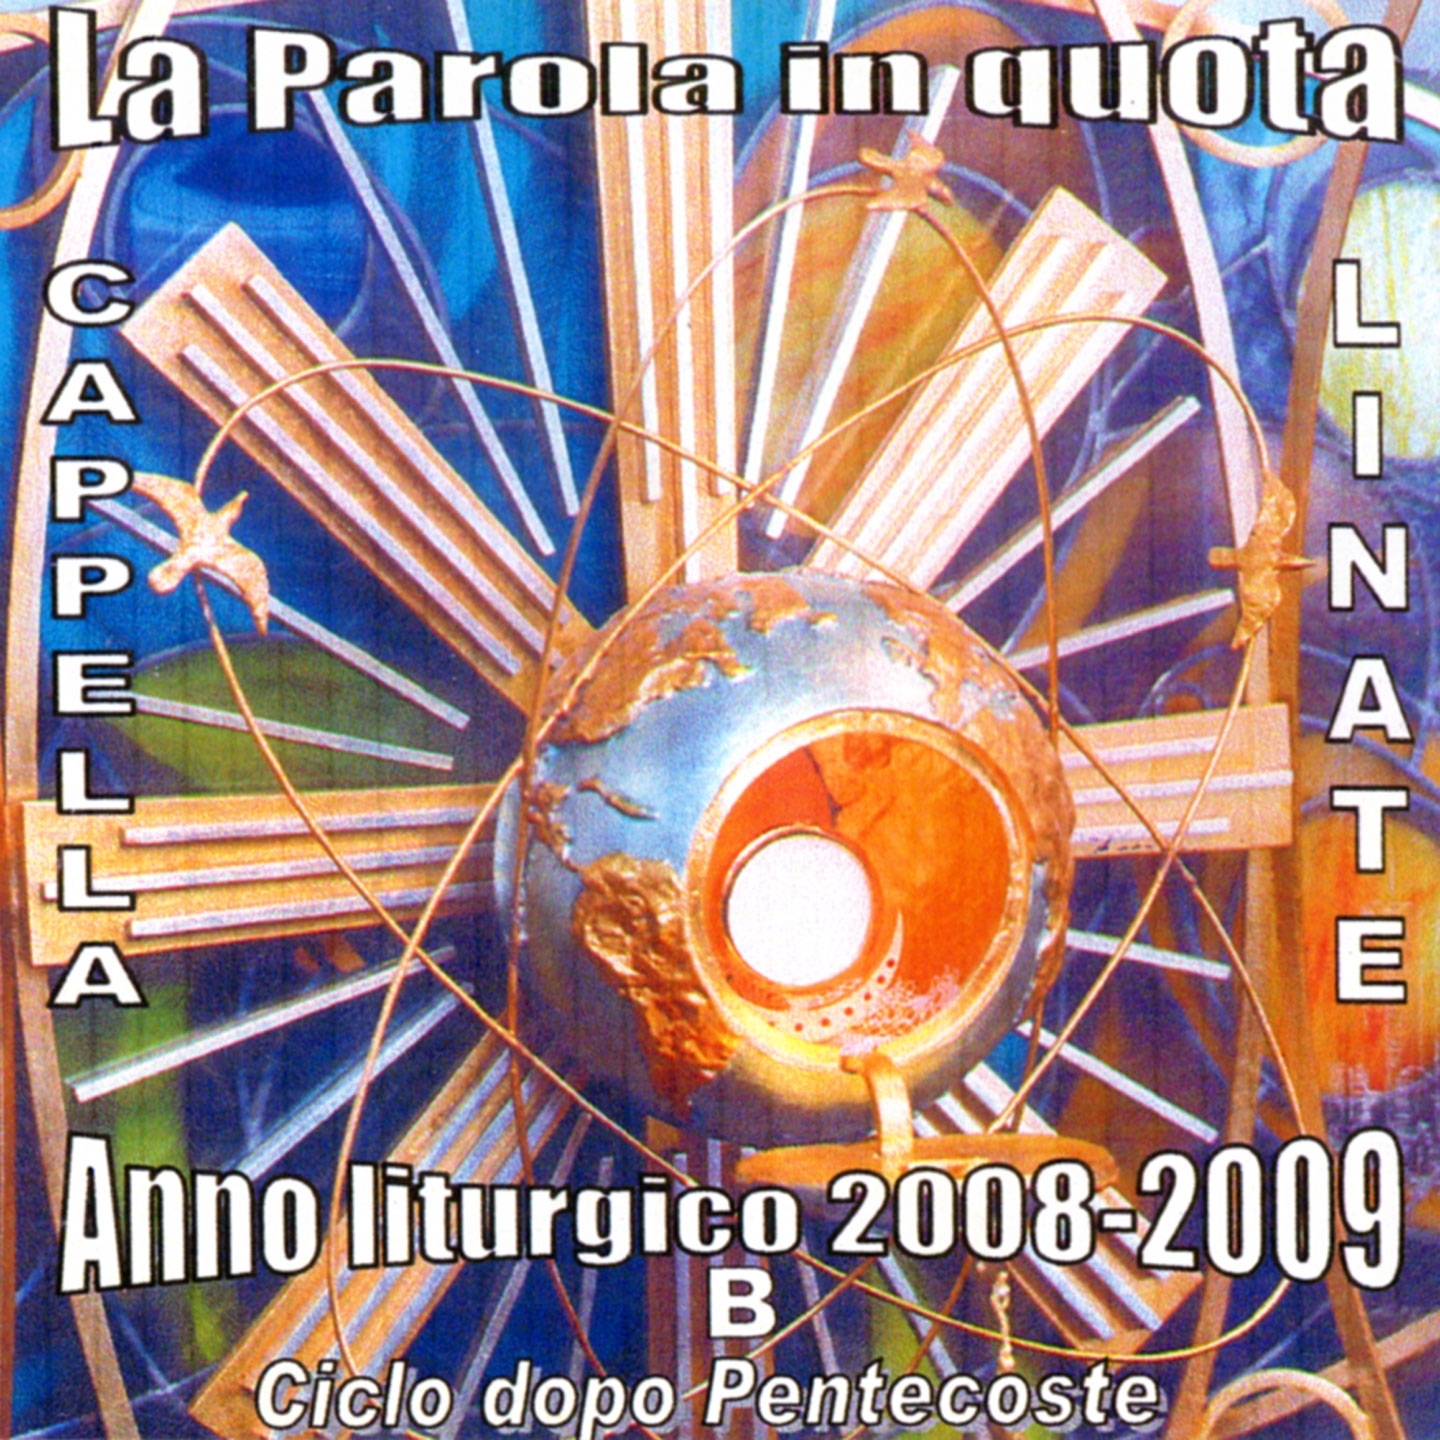 La parola in quota (Cappella Linate - Anno liturgico 2008-2009 B ciclo dopo Pentecoste)